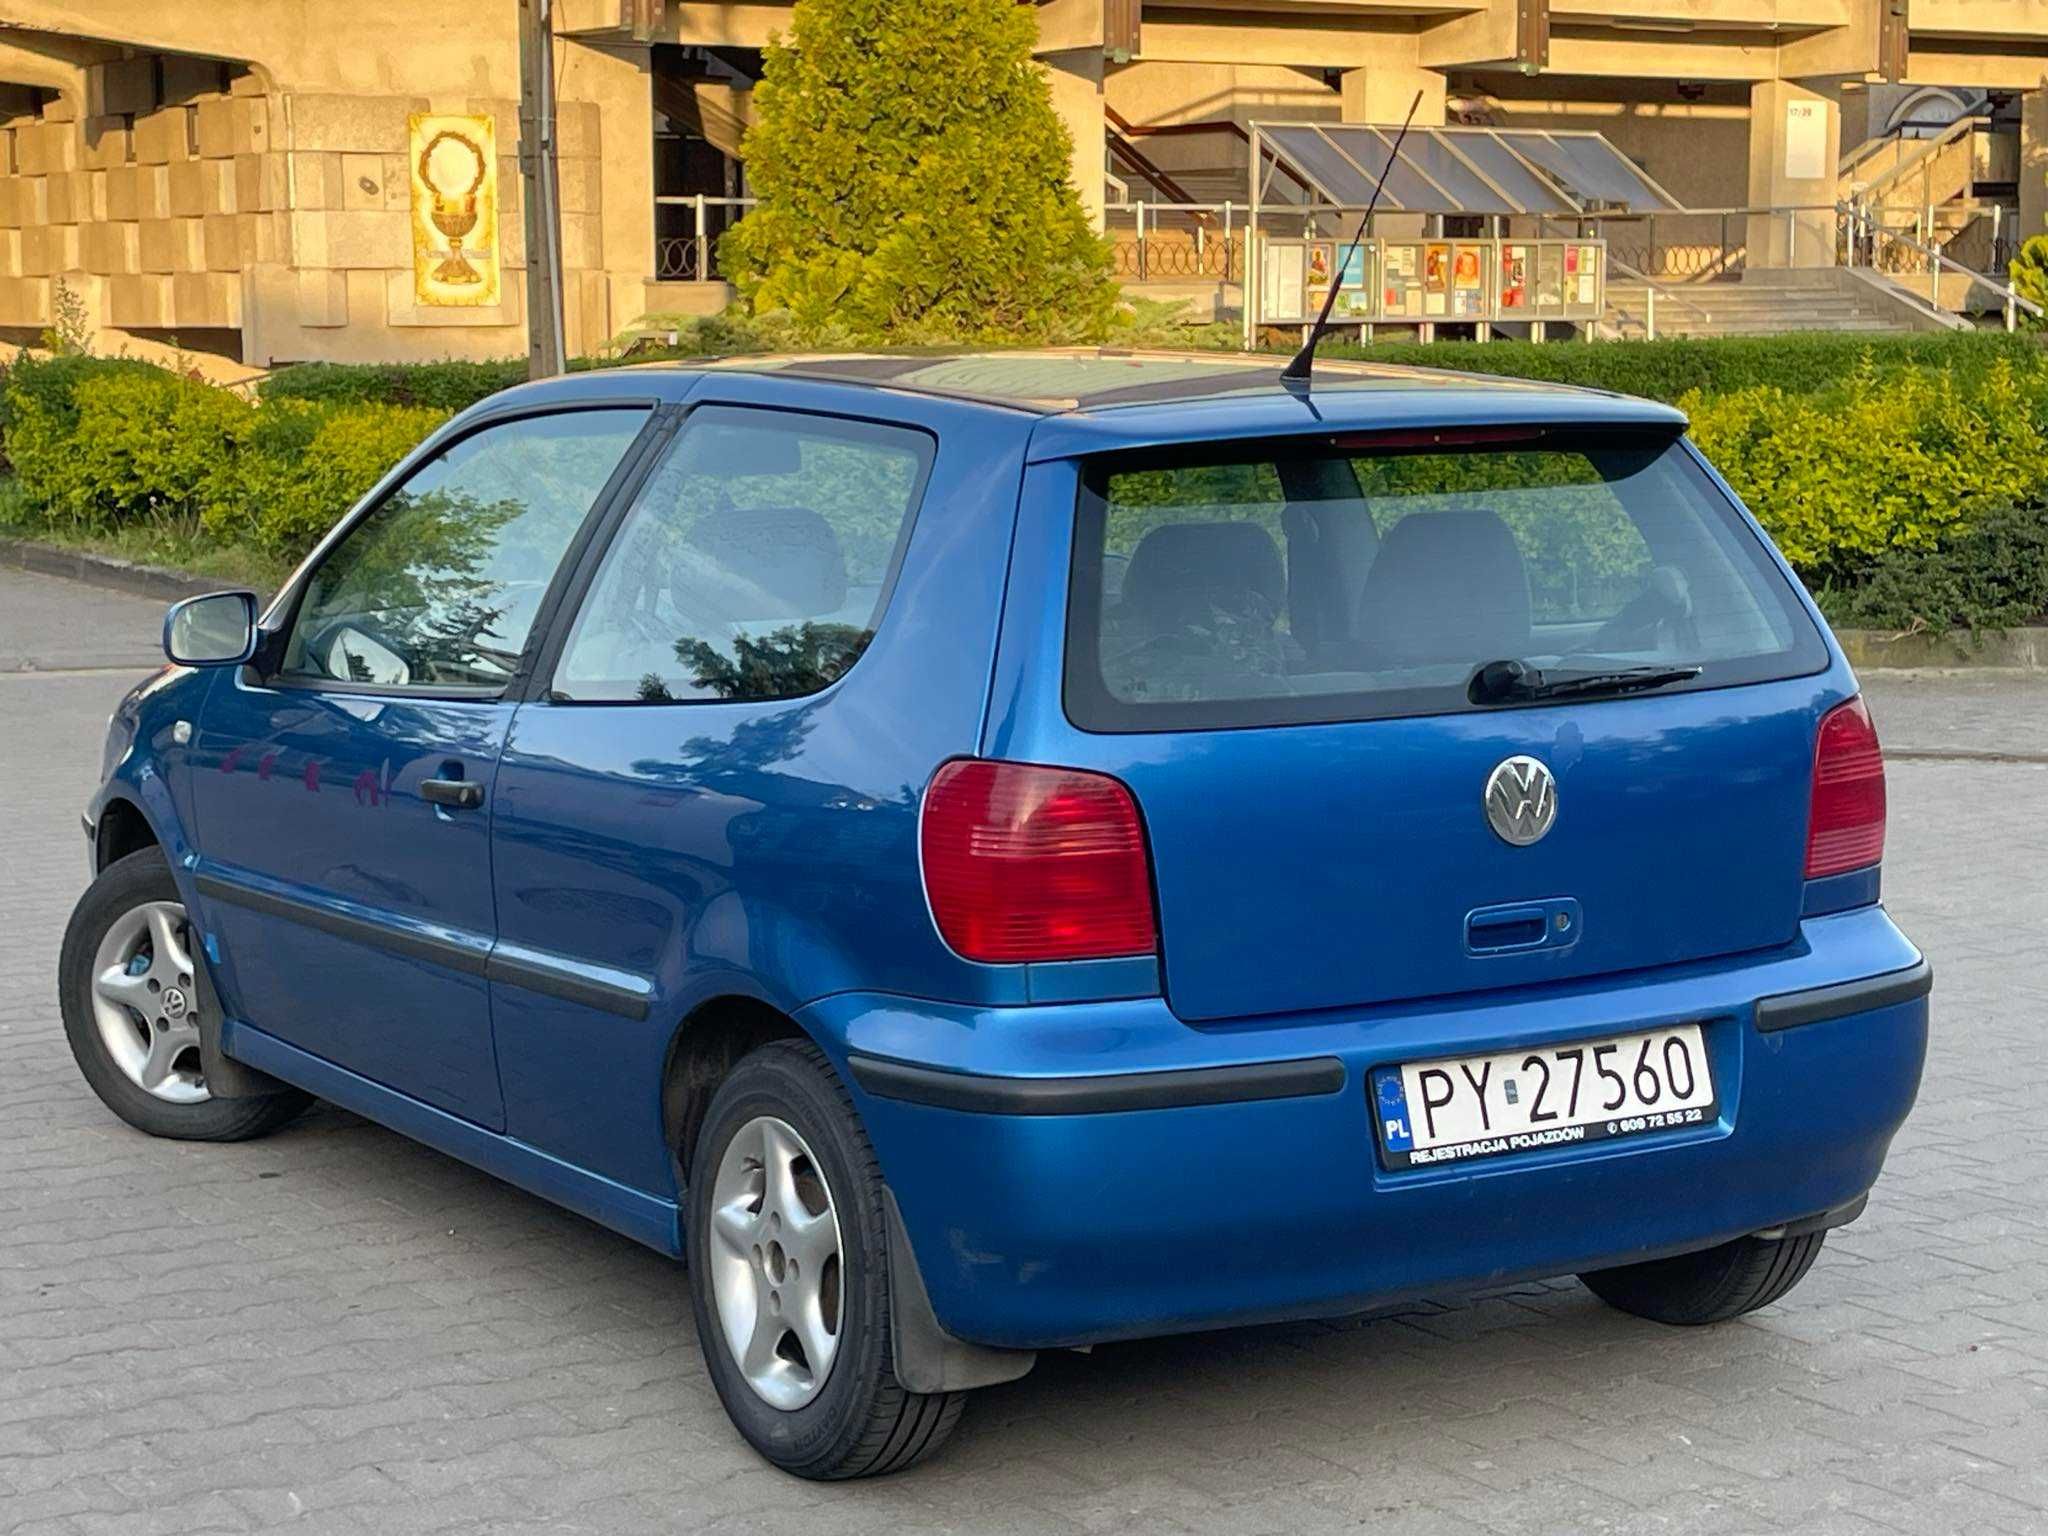 Volkswagen Polo 2002 1.4 mpi, Benzyna + LPG  . nowy przegląd. BDB stan